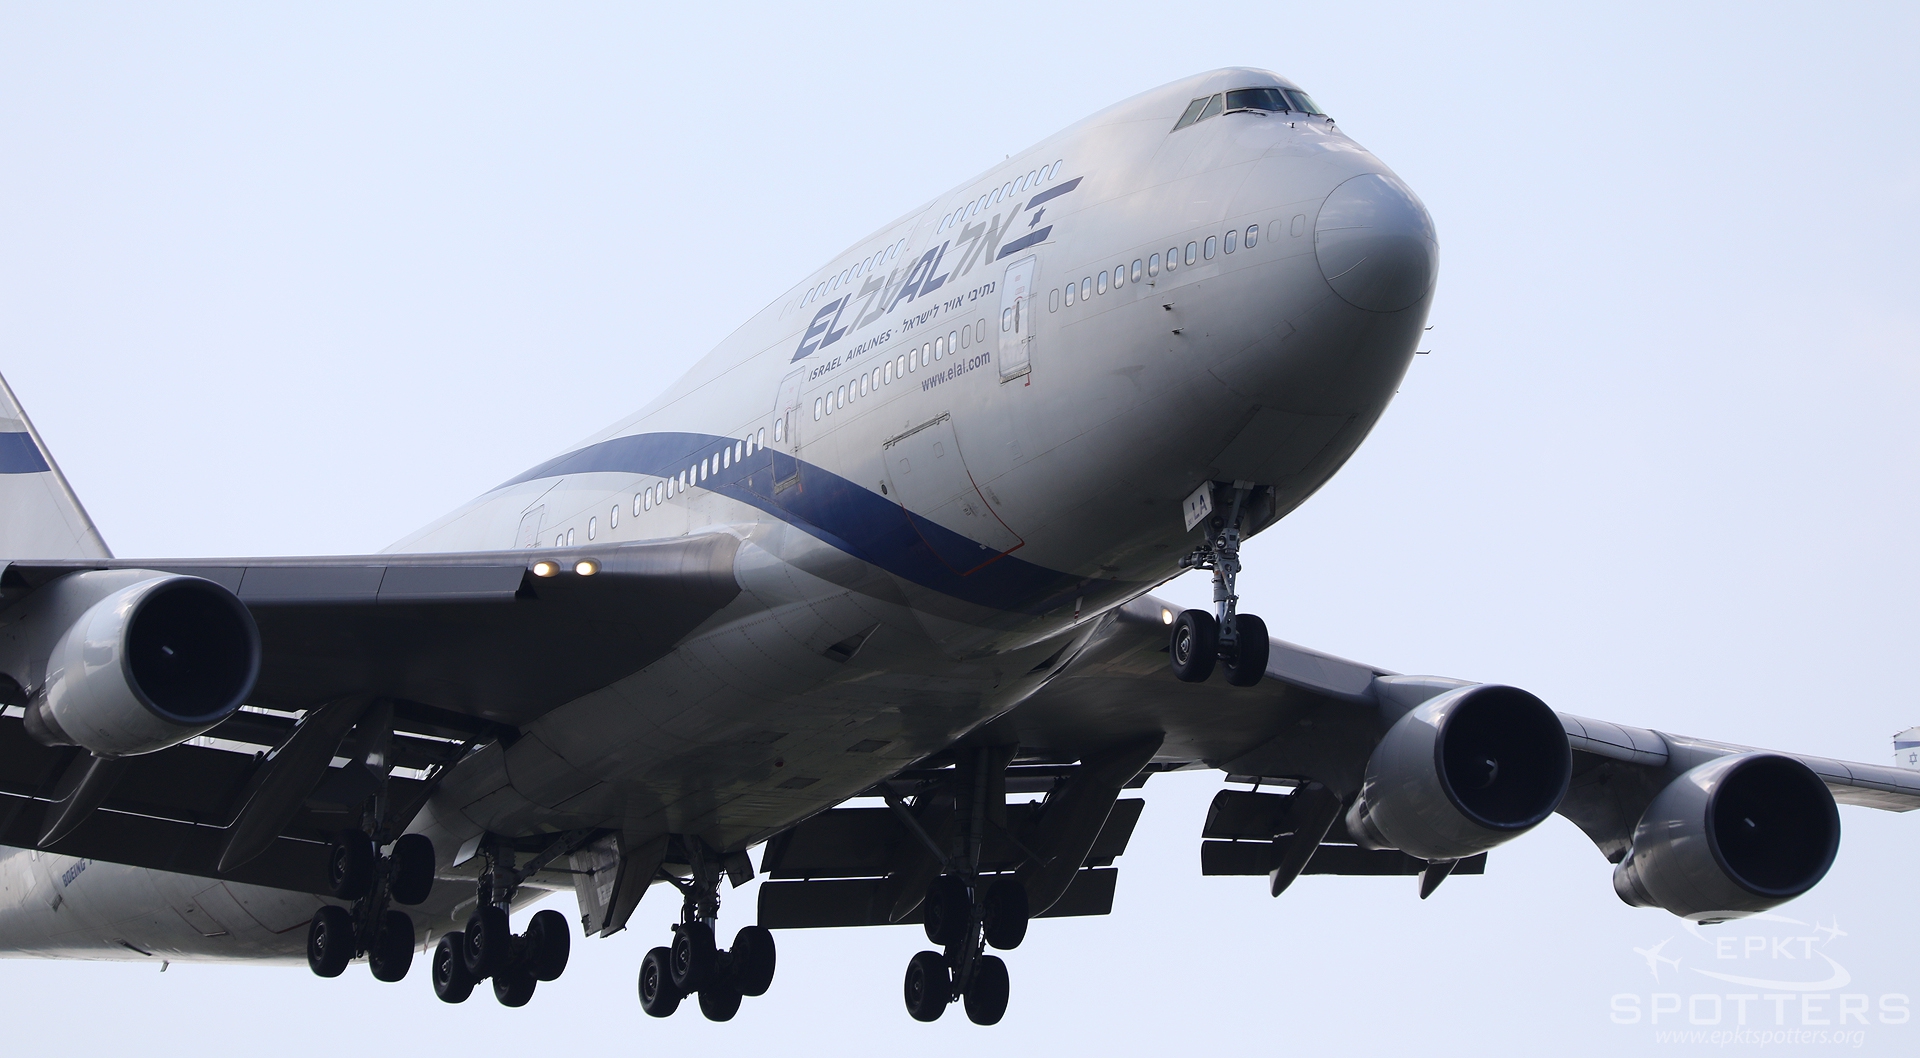 4X-ELA - Boeing 747 -458 (El Al Israel Airlines) / Chopin / Okecie - Warsaw Poland [EPWA/WAW]